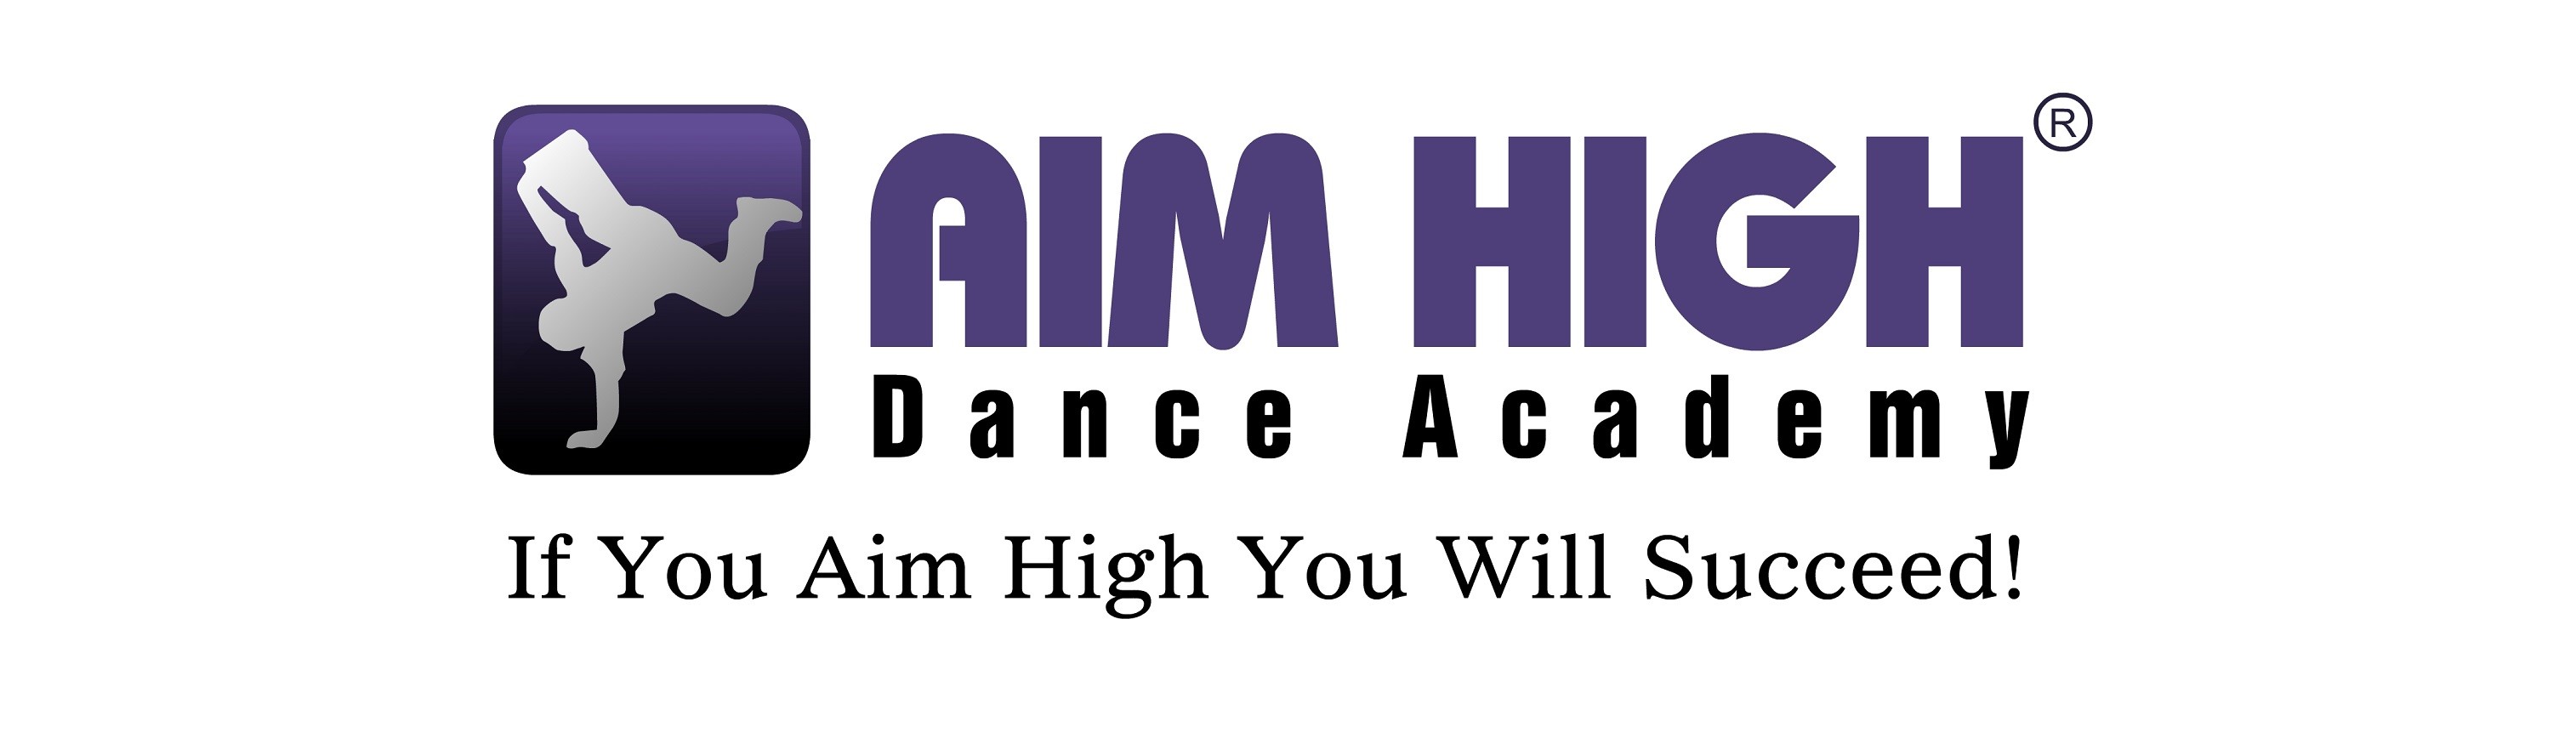 Aim High Dance Academy